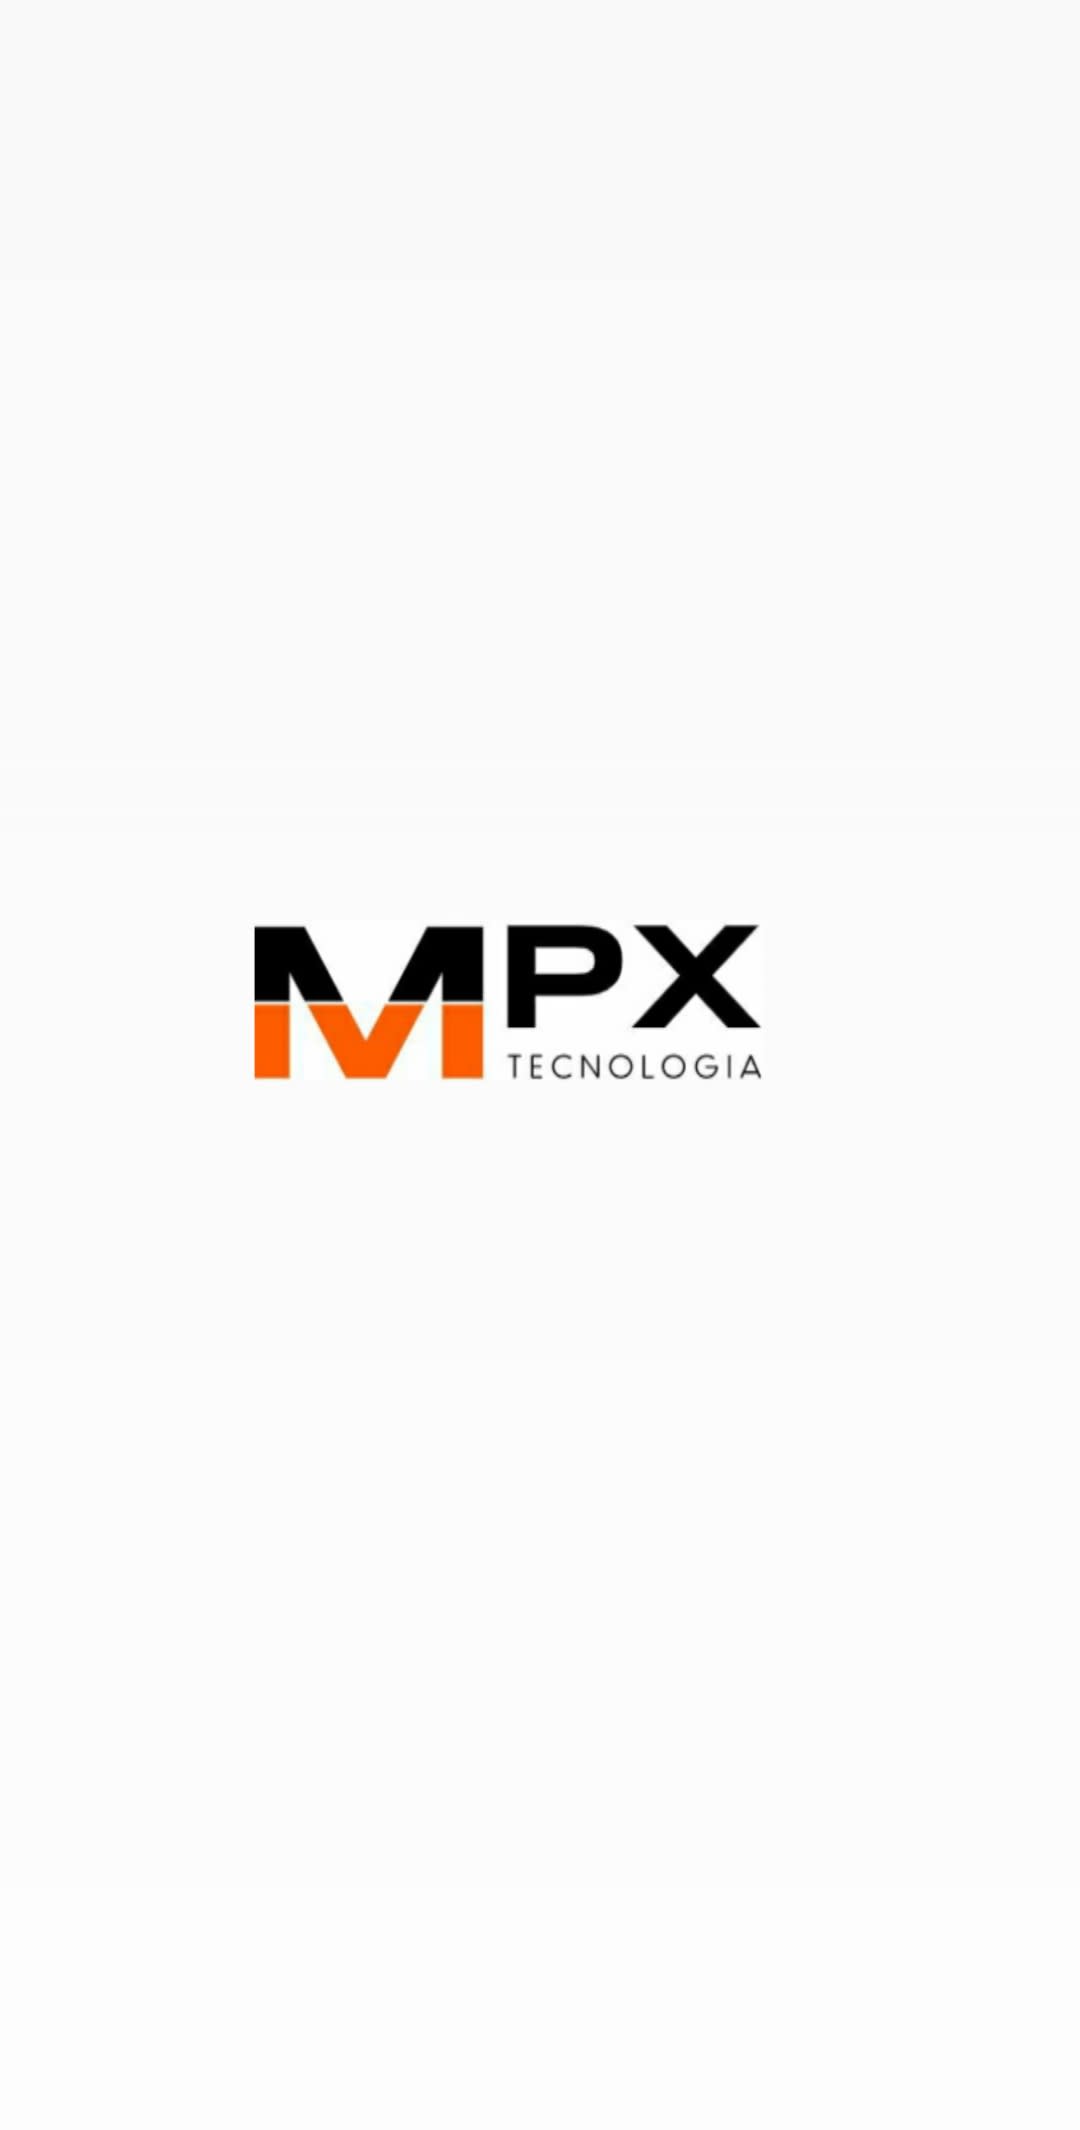 MPX Tecnologia